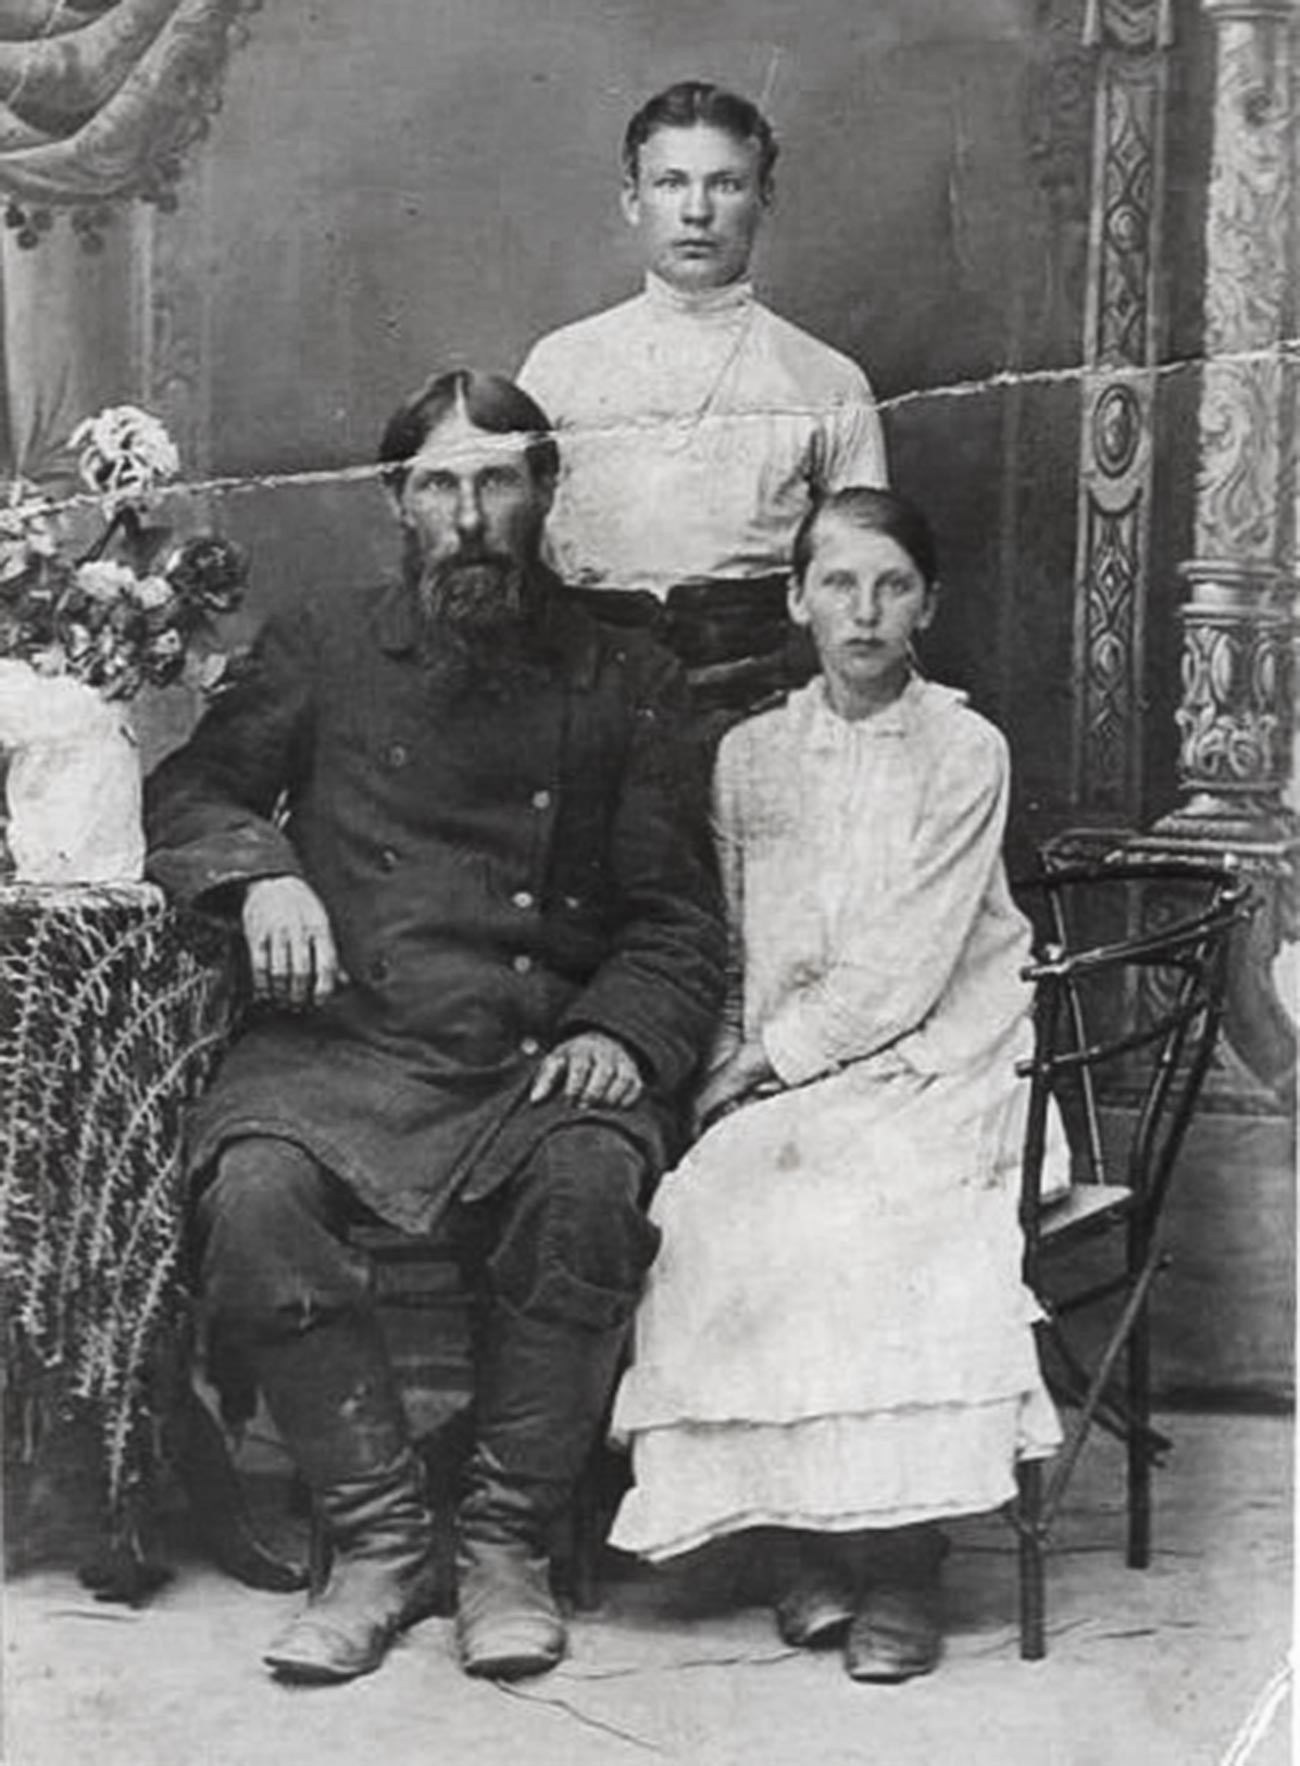 Foto orang tak dikenal yang dijual sebagai foto “Rasputin dengan anak-anak”.